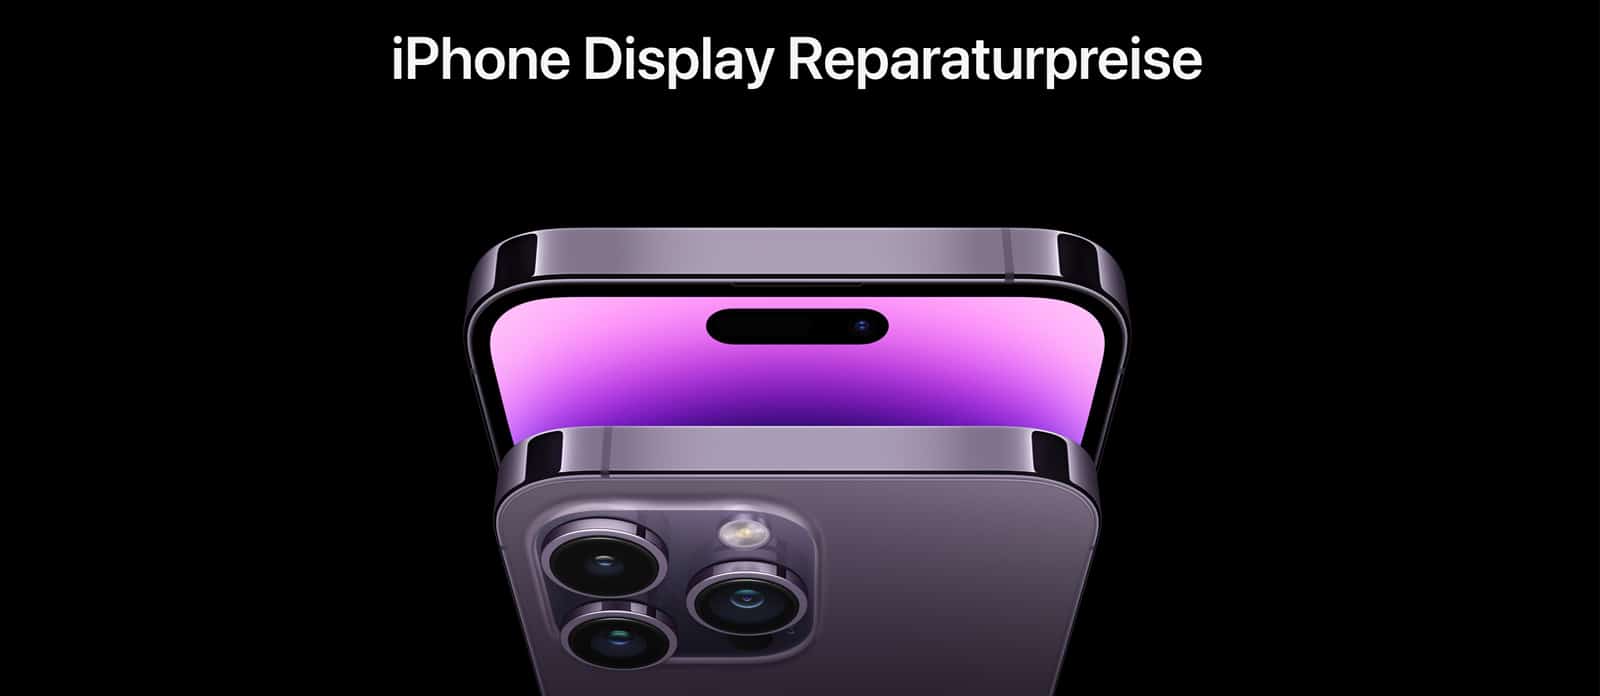 iPhone Display Reparatur Preise 2022